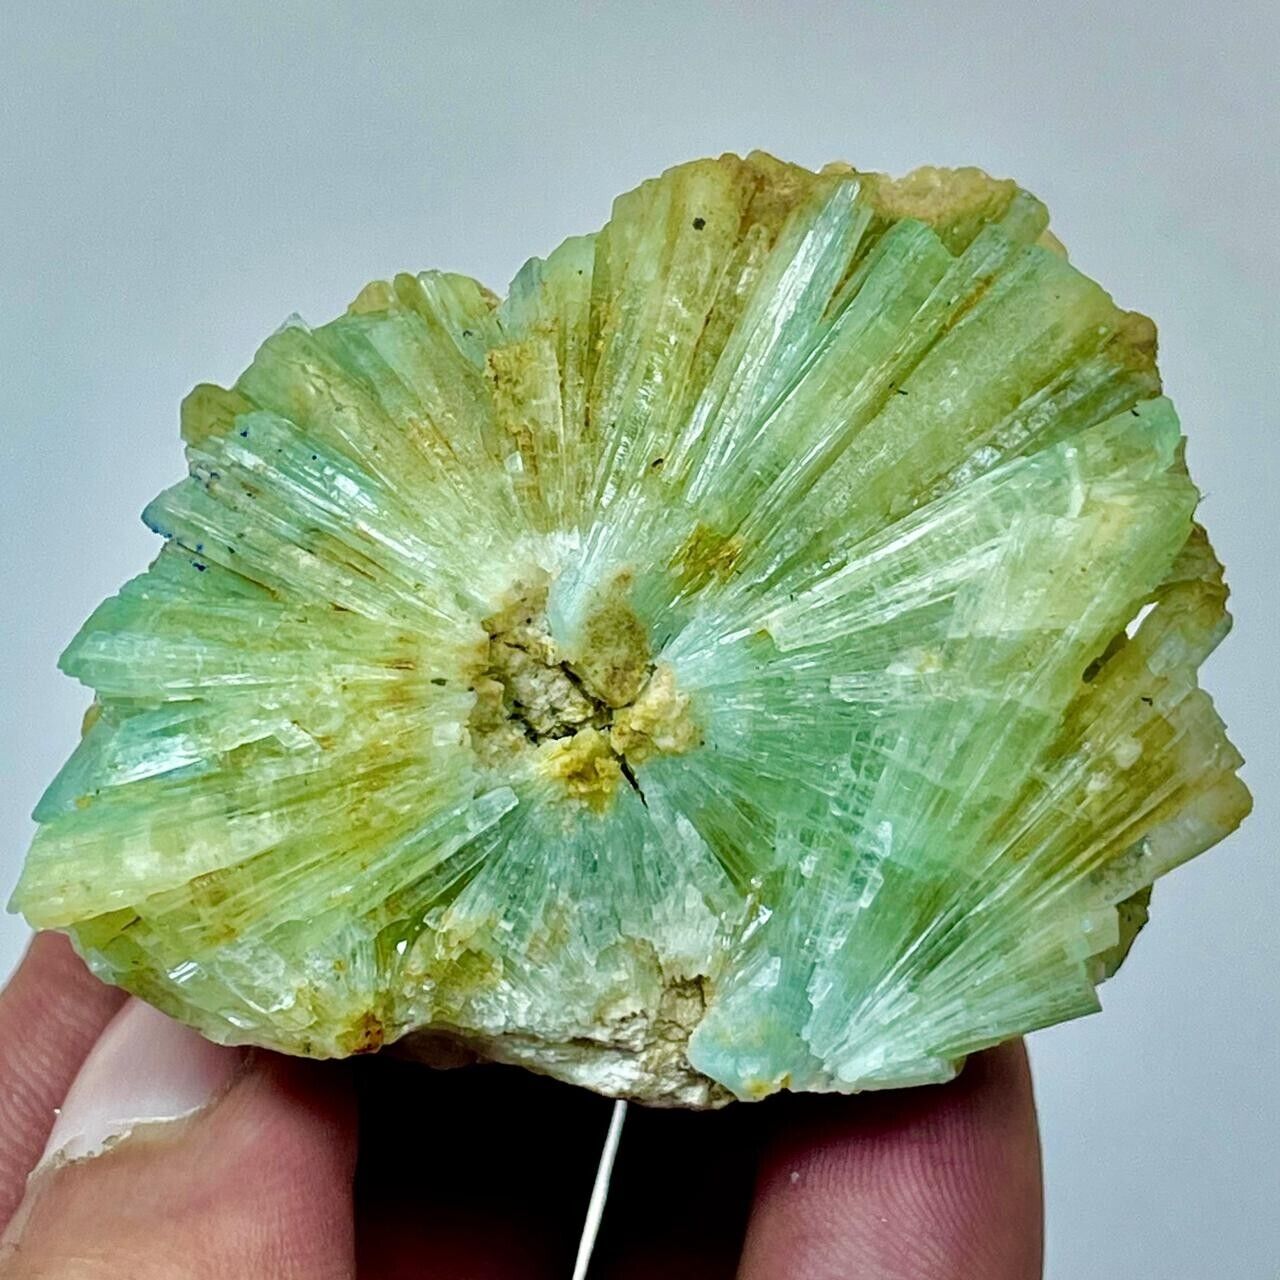 84 Gram  Unique Shape Crystalized Aragonite Specimen@ Afghanistan